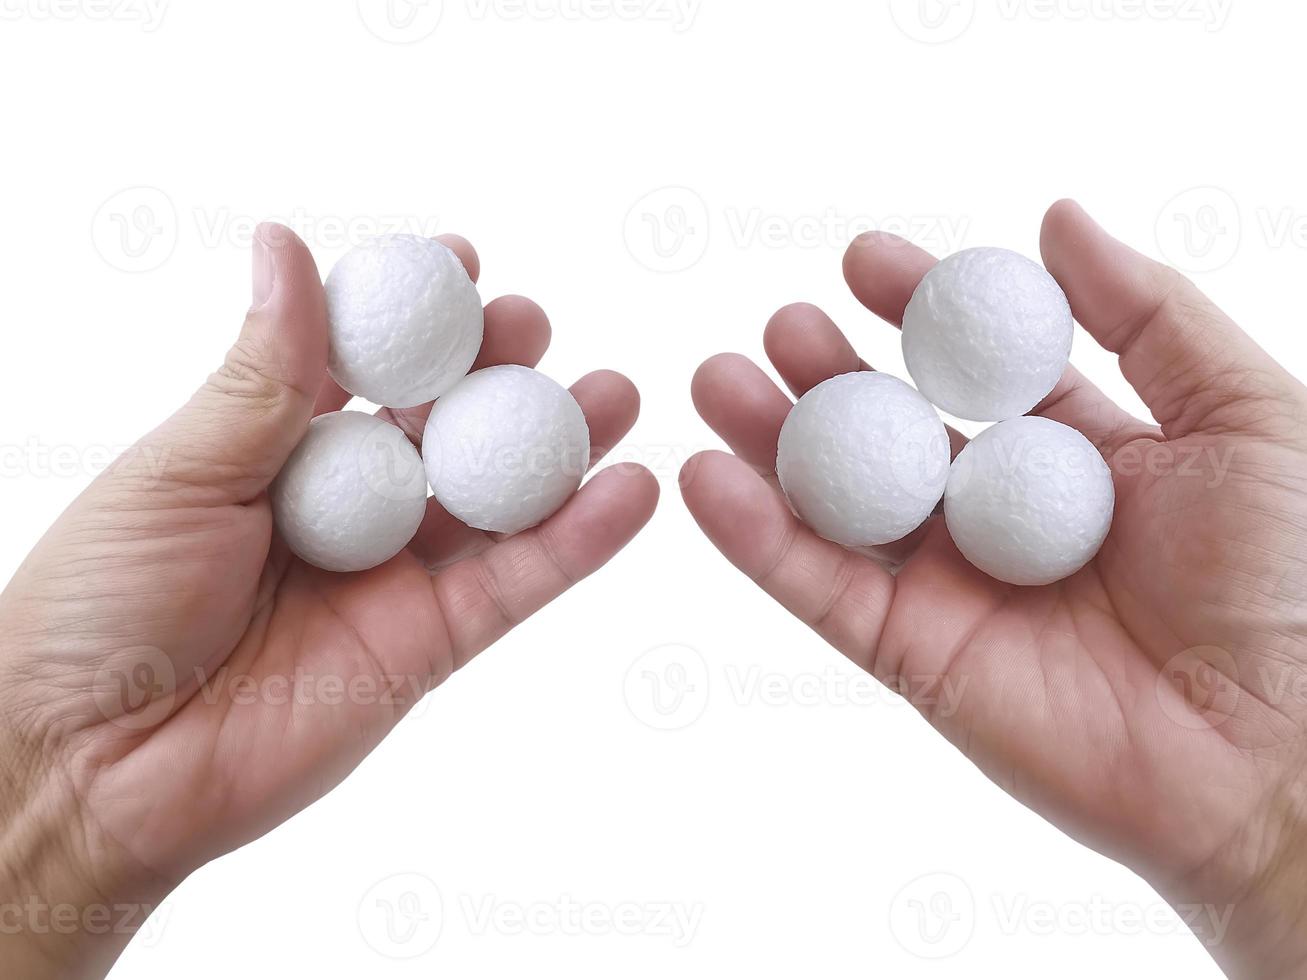 mano de hombre sosteniendo tres bolas blancas de espuma de poliestireno en blanco contra el fondo blanco4 foto